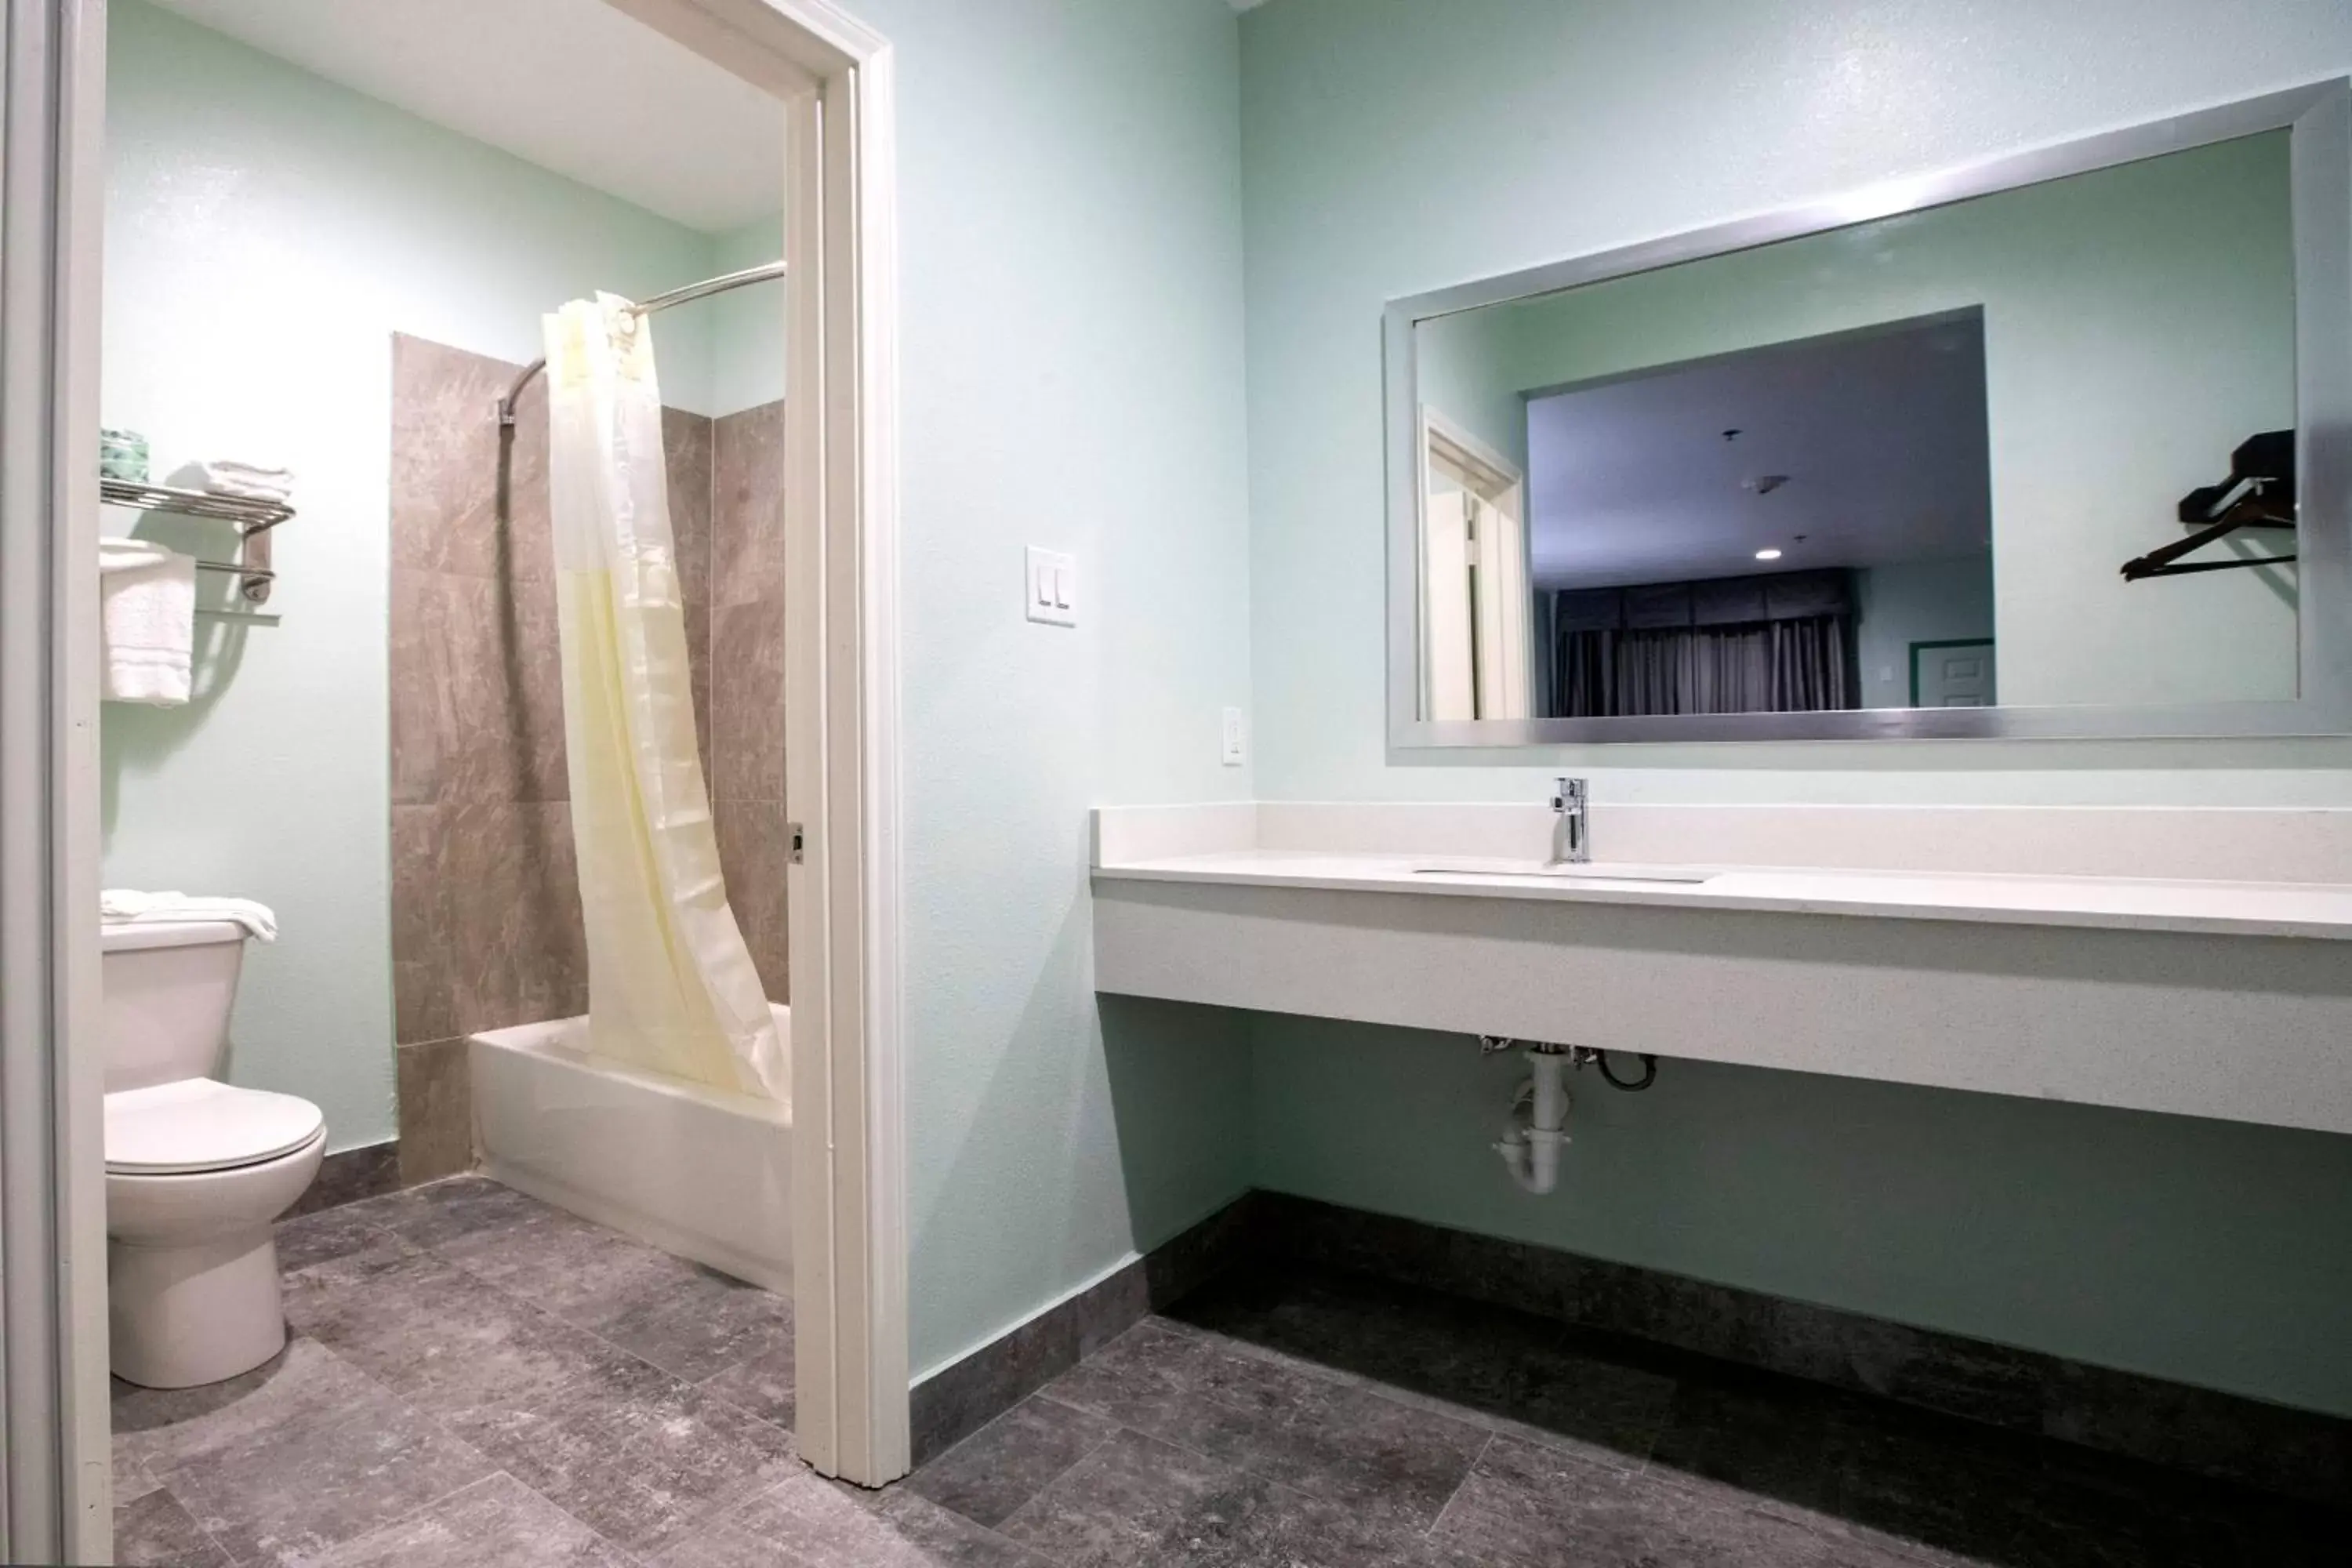 Bathroom in Hotel Bel Air